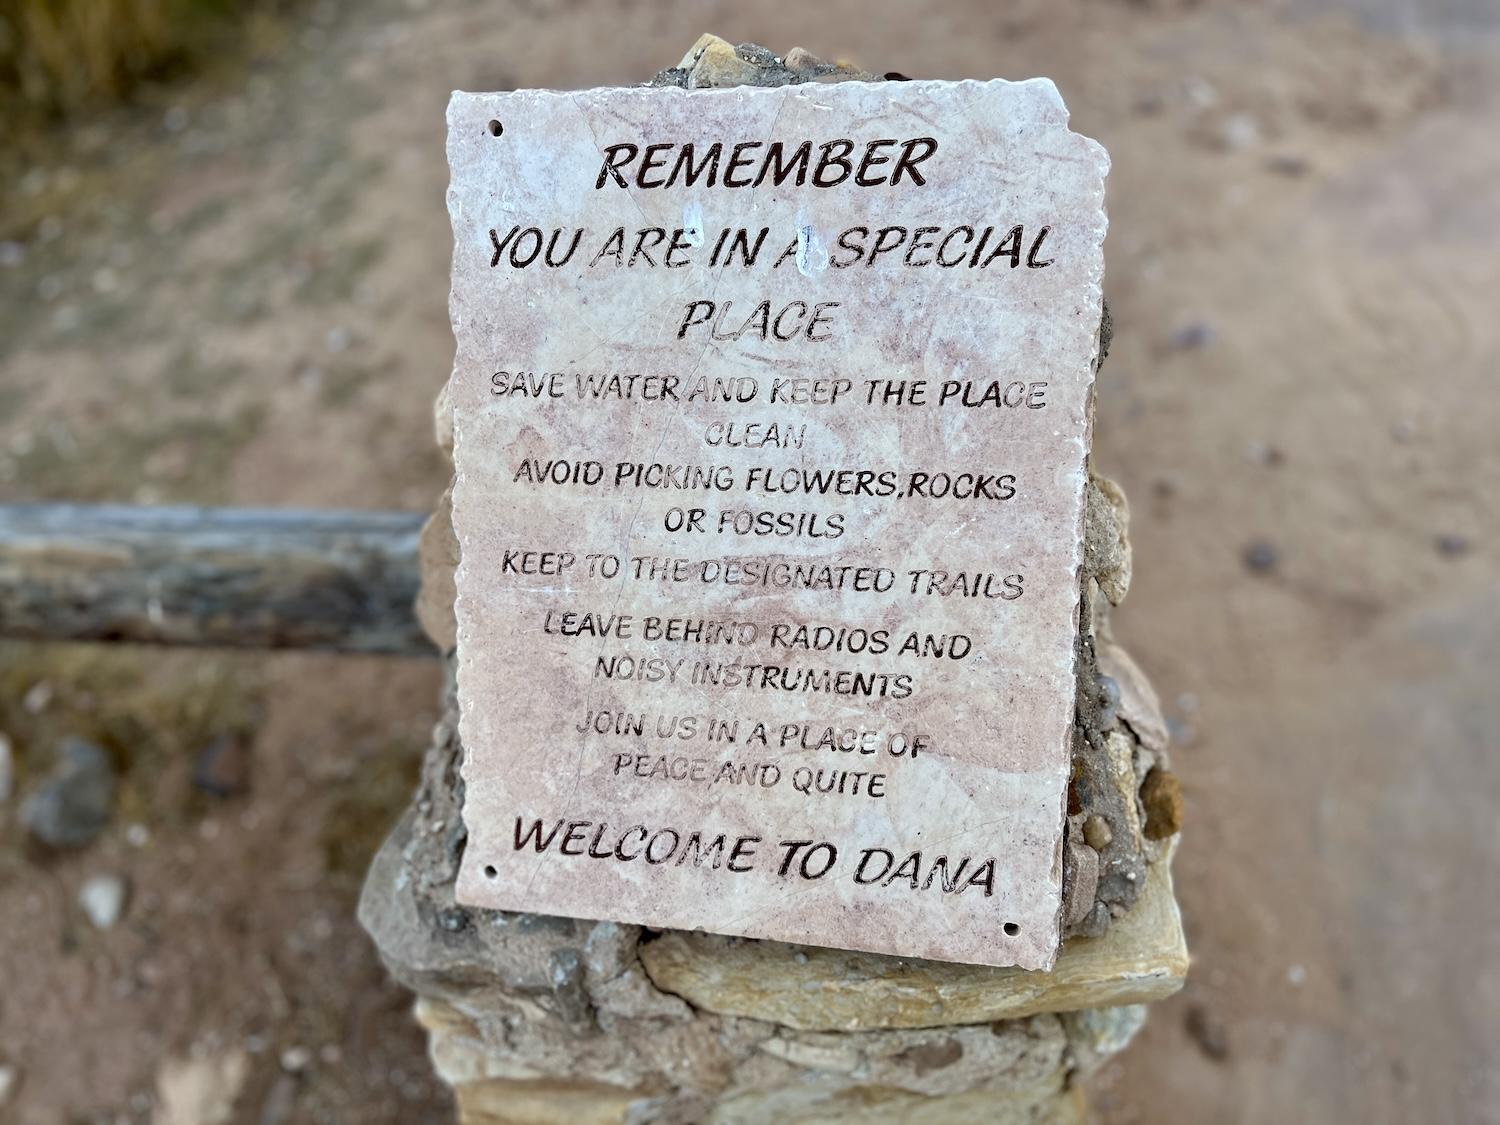 Dana Biosphere Reserve in Jordan promises peace and quiet.